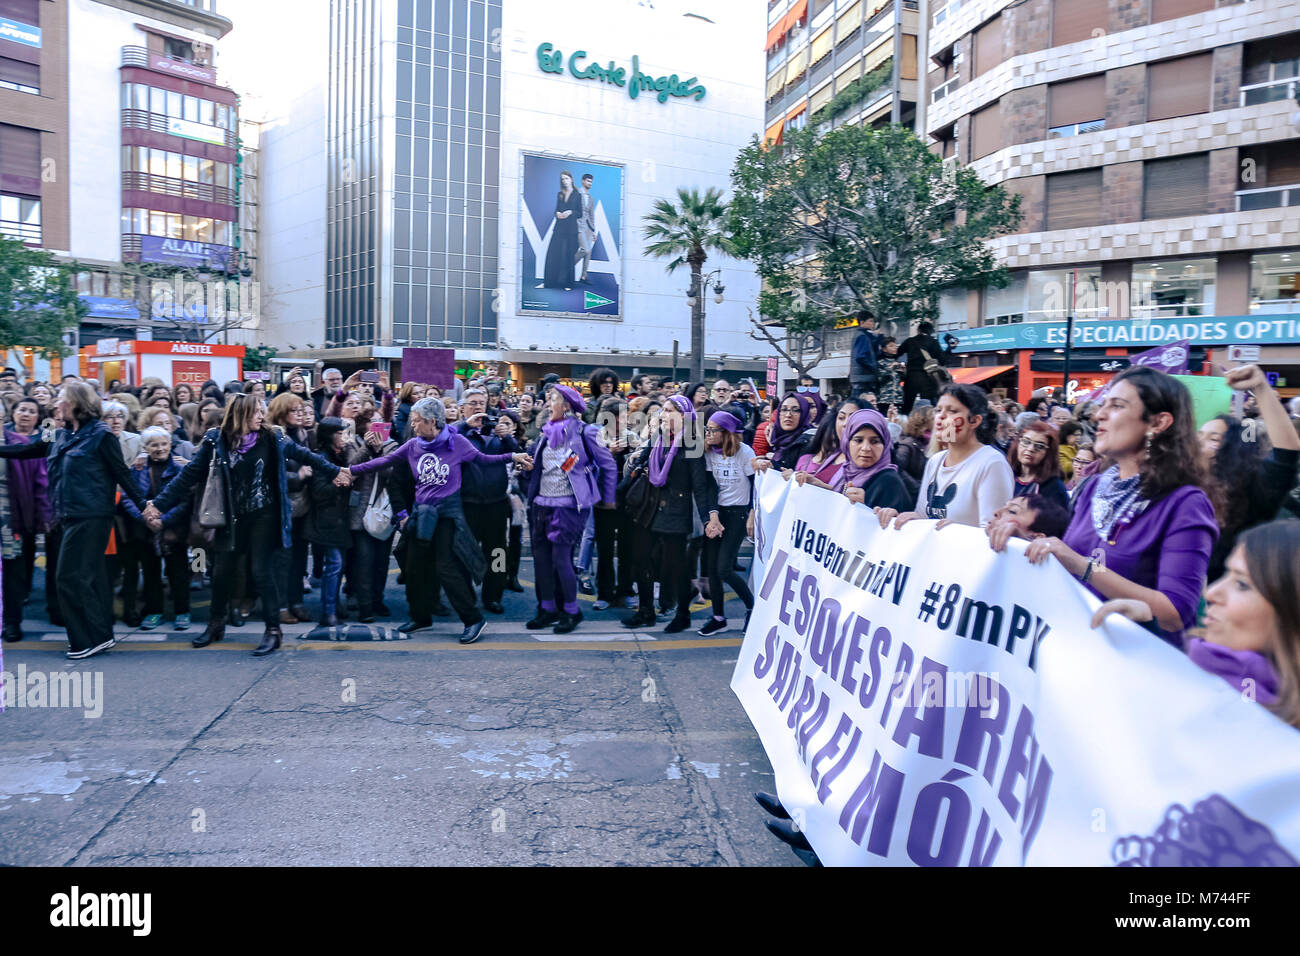 Valencai, Espagne. 8 mars grève les revendications féministes en Espagne pour l'égalité de rémunération et l'égalité des droits pour les femmes et les hommes -- Pro féminisme en mouvements en Espagne a appelé à une grève générale, pas de travail, pas de boutique, pas de soins de la famille, à tous les travailleurs de sexe féminin. "Si on s'arrête, le monde s'arrête" est le slogan qu'ils utilisent, de rendre hommage à l'Islande 1975 Grève des femmes qui ont obtenu d'arrêter 9 femmes sur 10 dans le pays. Credit : vidal santiago vallejo/Alamy Live News Banque D'Images